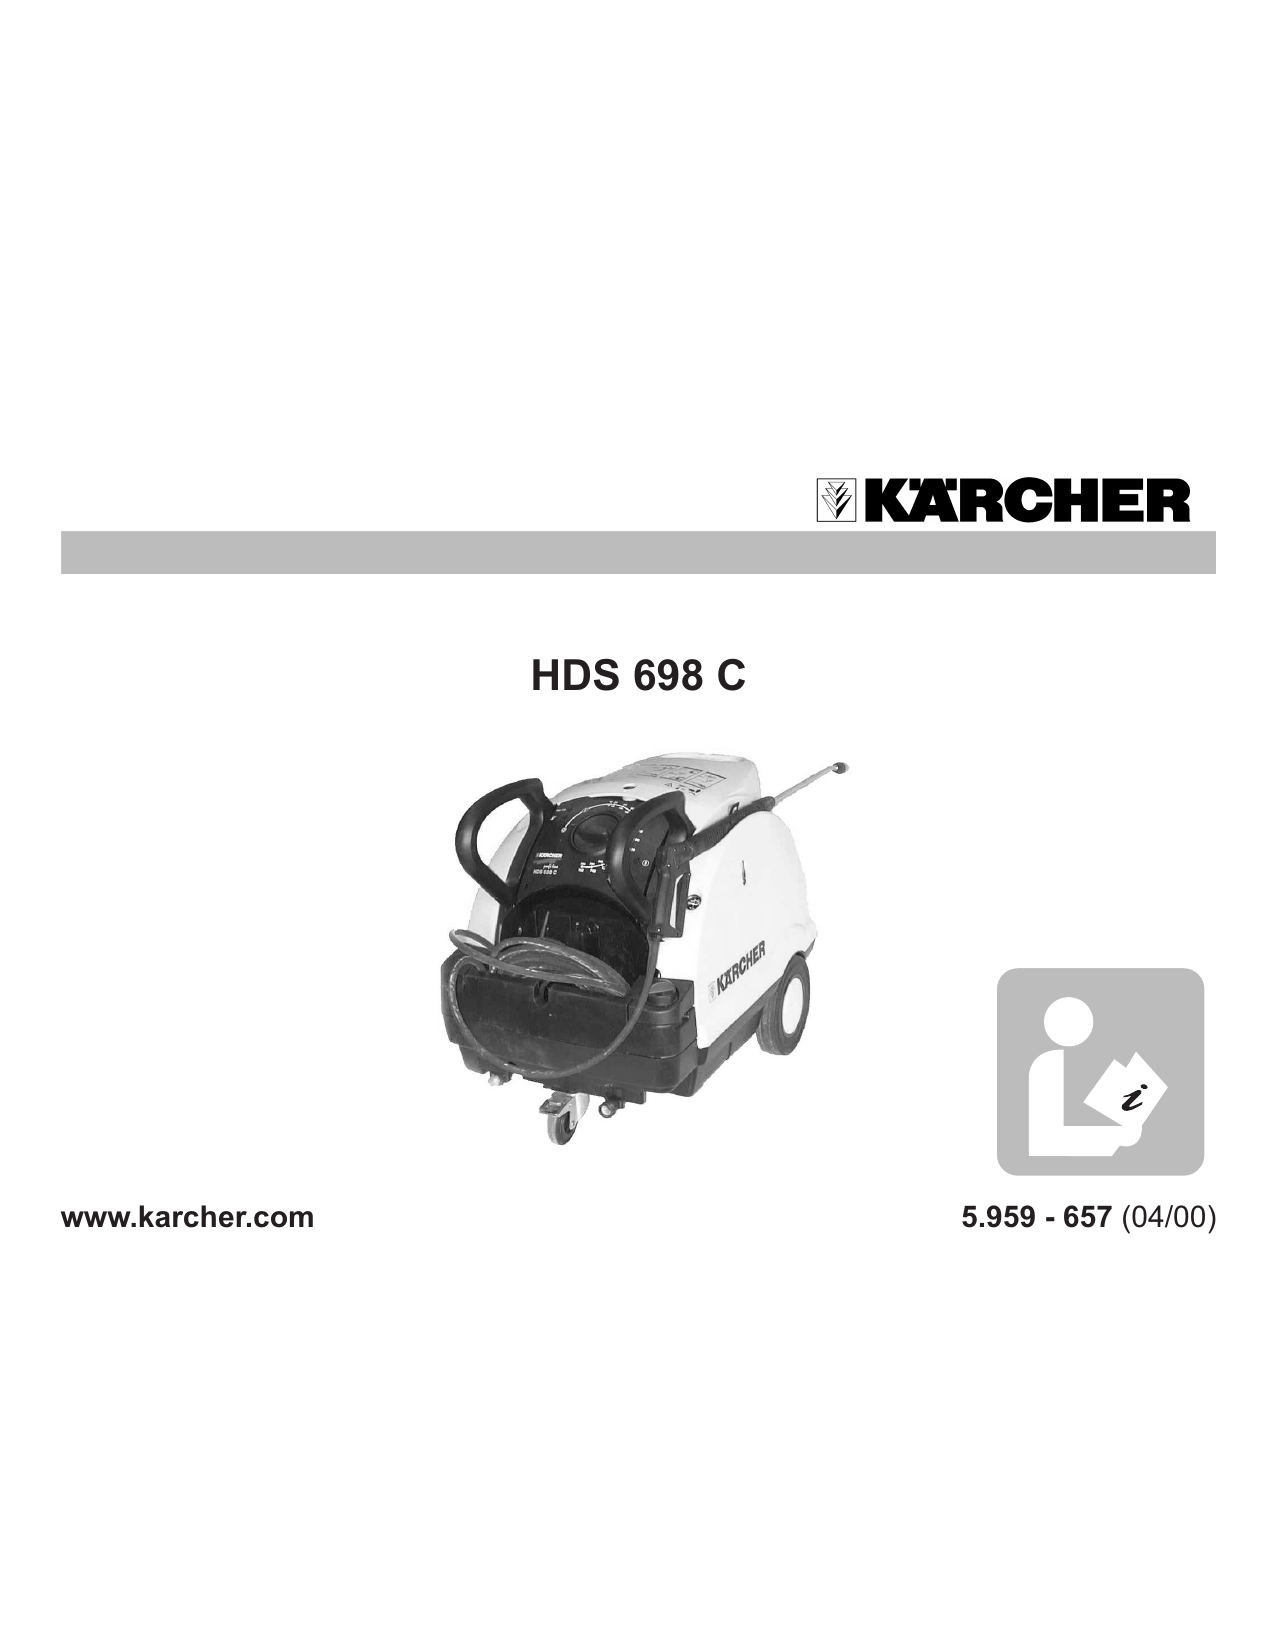 Hochdruckdüse für Kärcher  HDS 698 C Eco  und Kärcher HDS 698 CSX Eco 